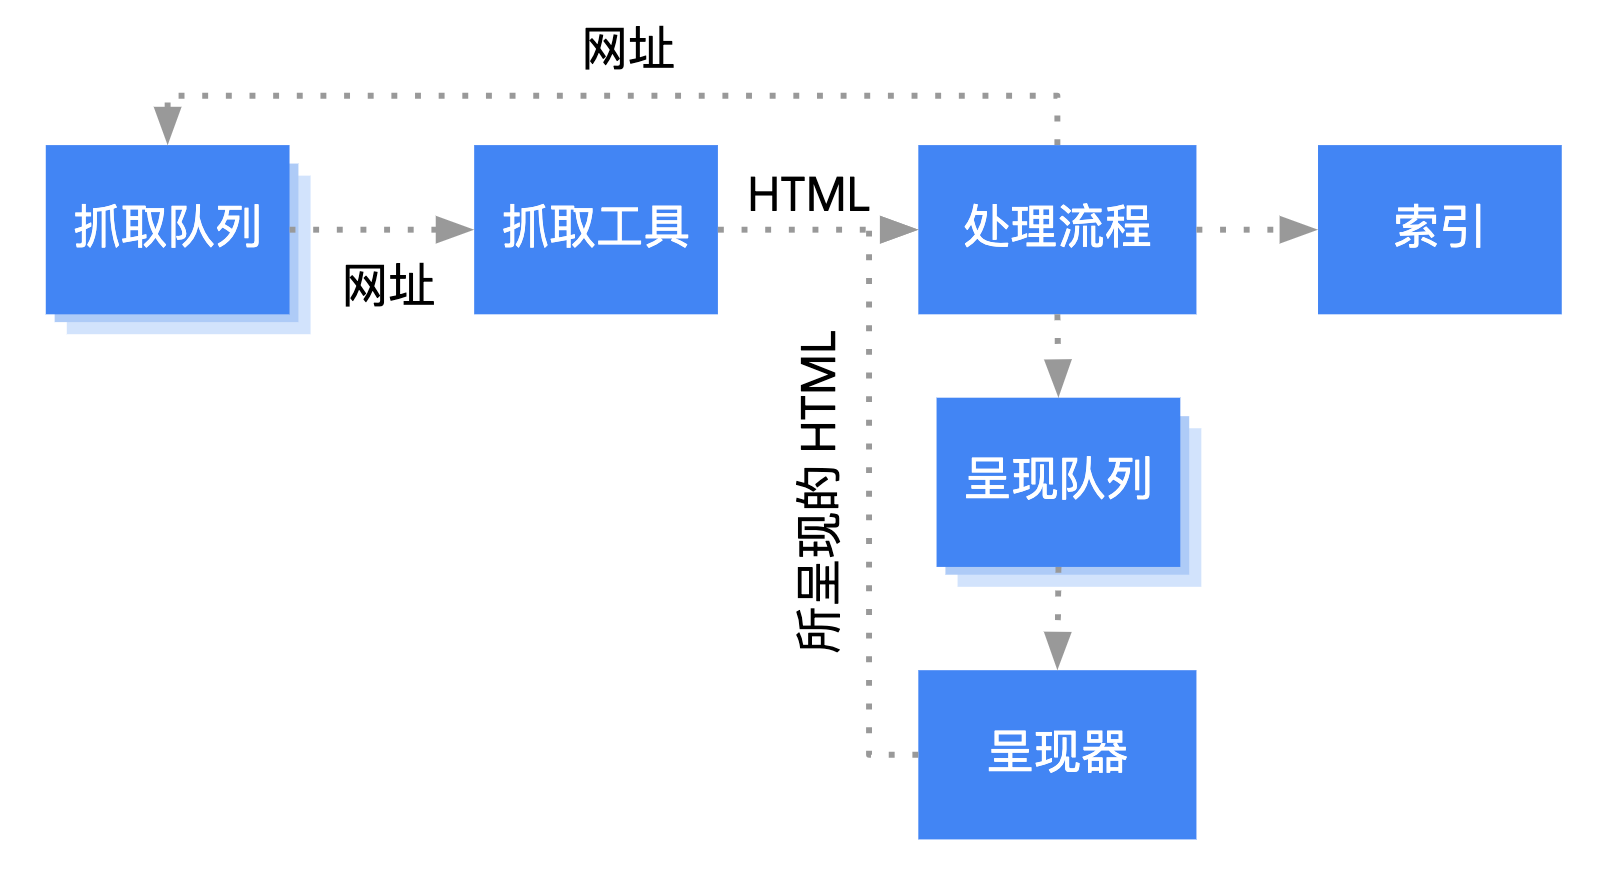 Googlebot 从抓取队列中获取网址，对其进行抓取，然后将其传递到处理阶段。在处理阶段，Googlebot 会提取重新回到抓取队列的链接，并将网页加入呈现队列。网页从呈现队列进入呈现器，呈现器将所呈现的 HTML 传递回处理阶段，从而将内容编入索引并提取链接以将其放入抓取队列中。